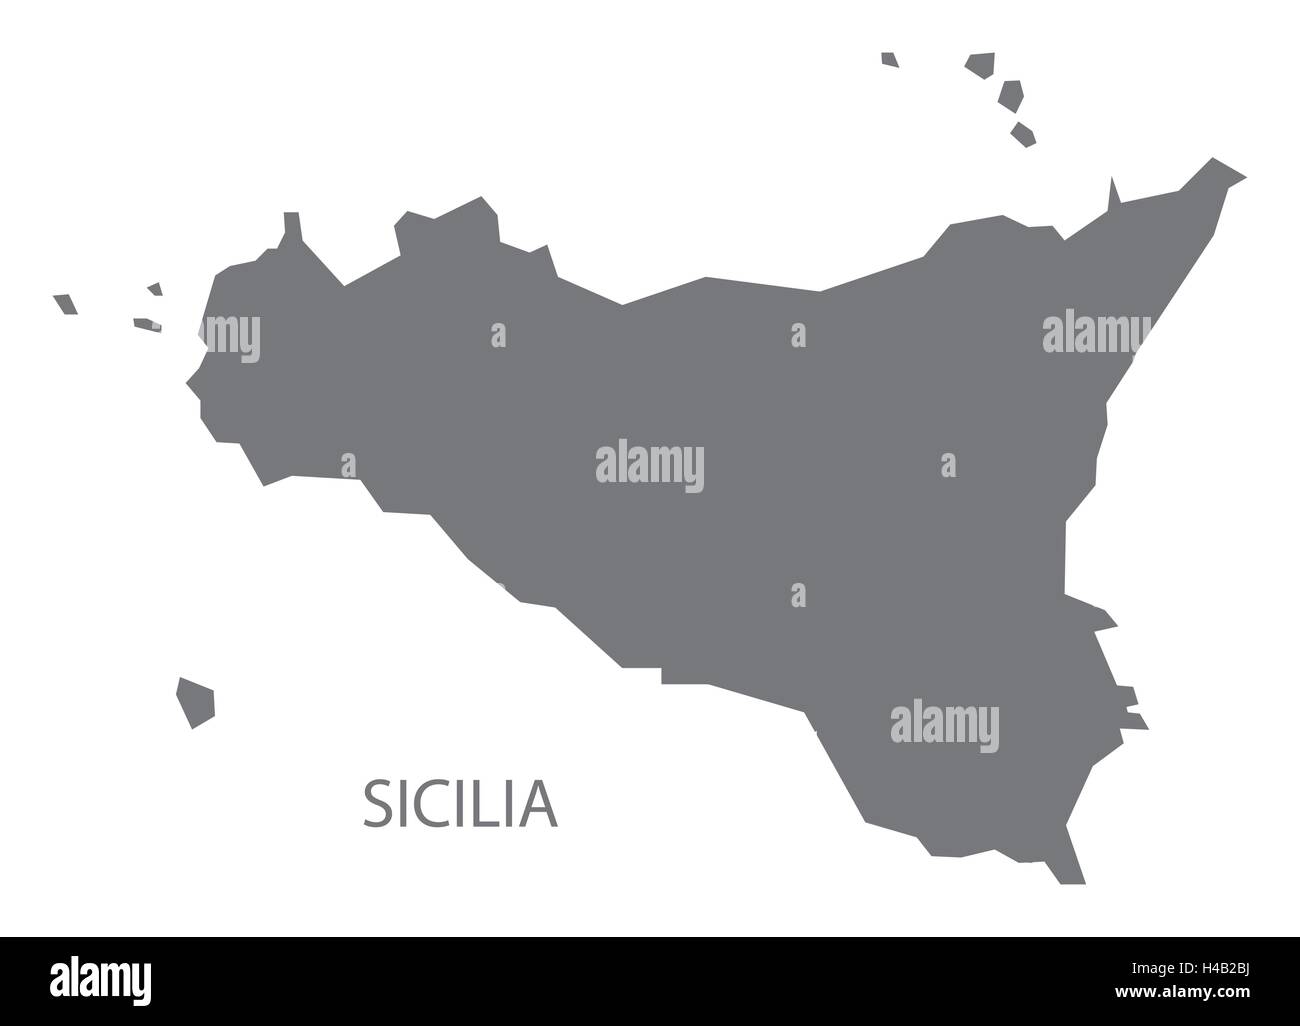 Sicilia Italy Map in grey Stock Vector